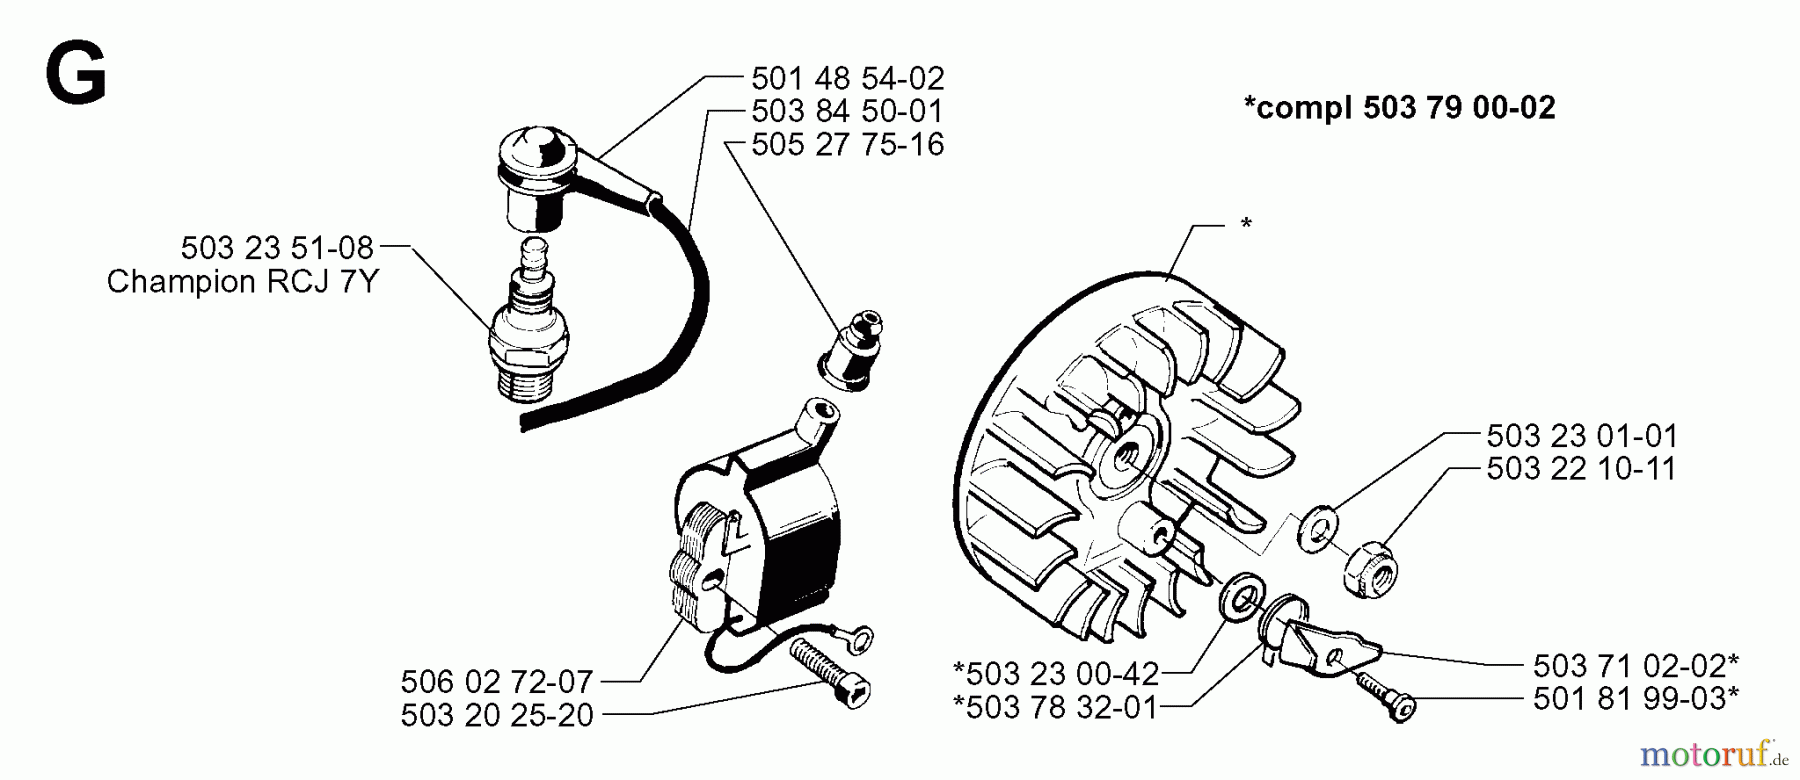  Jonsered Motorsensen, Trimmer GR50 - Jonsered String/Brush Trimmer (1998-06) IGNITION SYSTEM